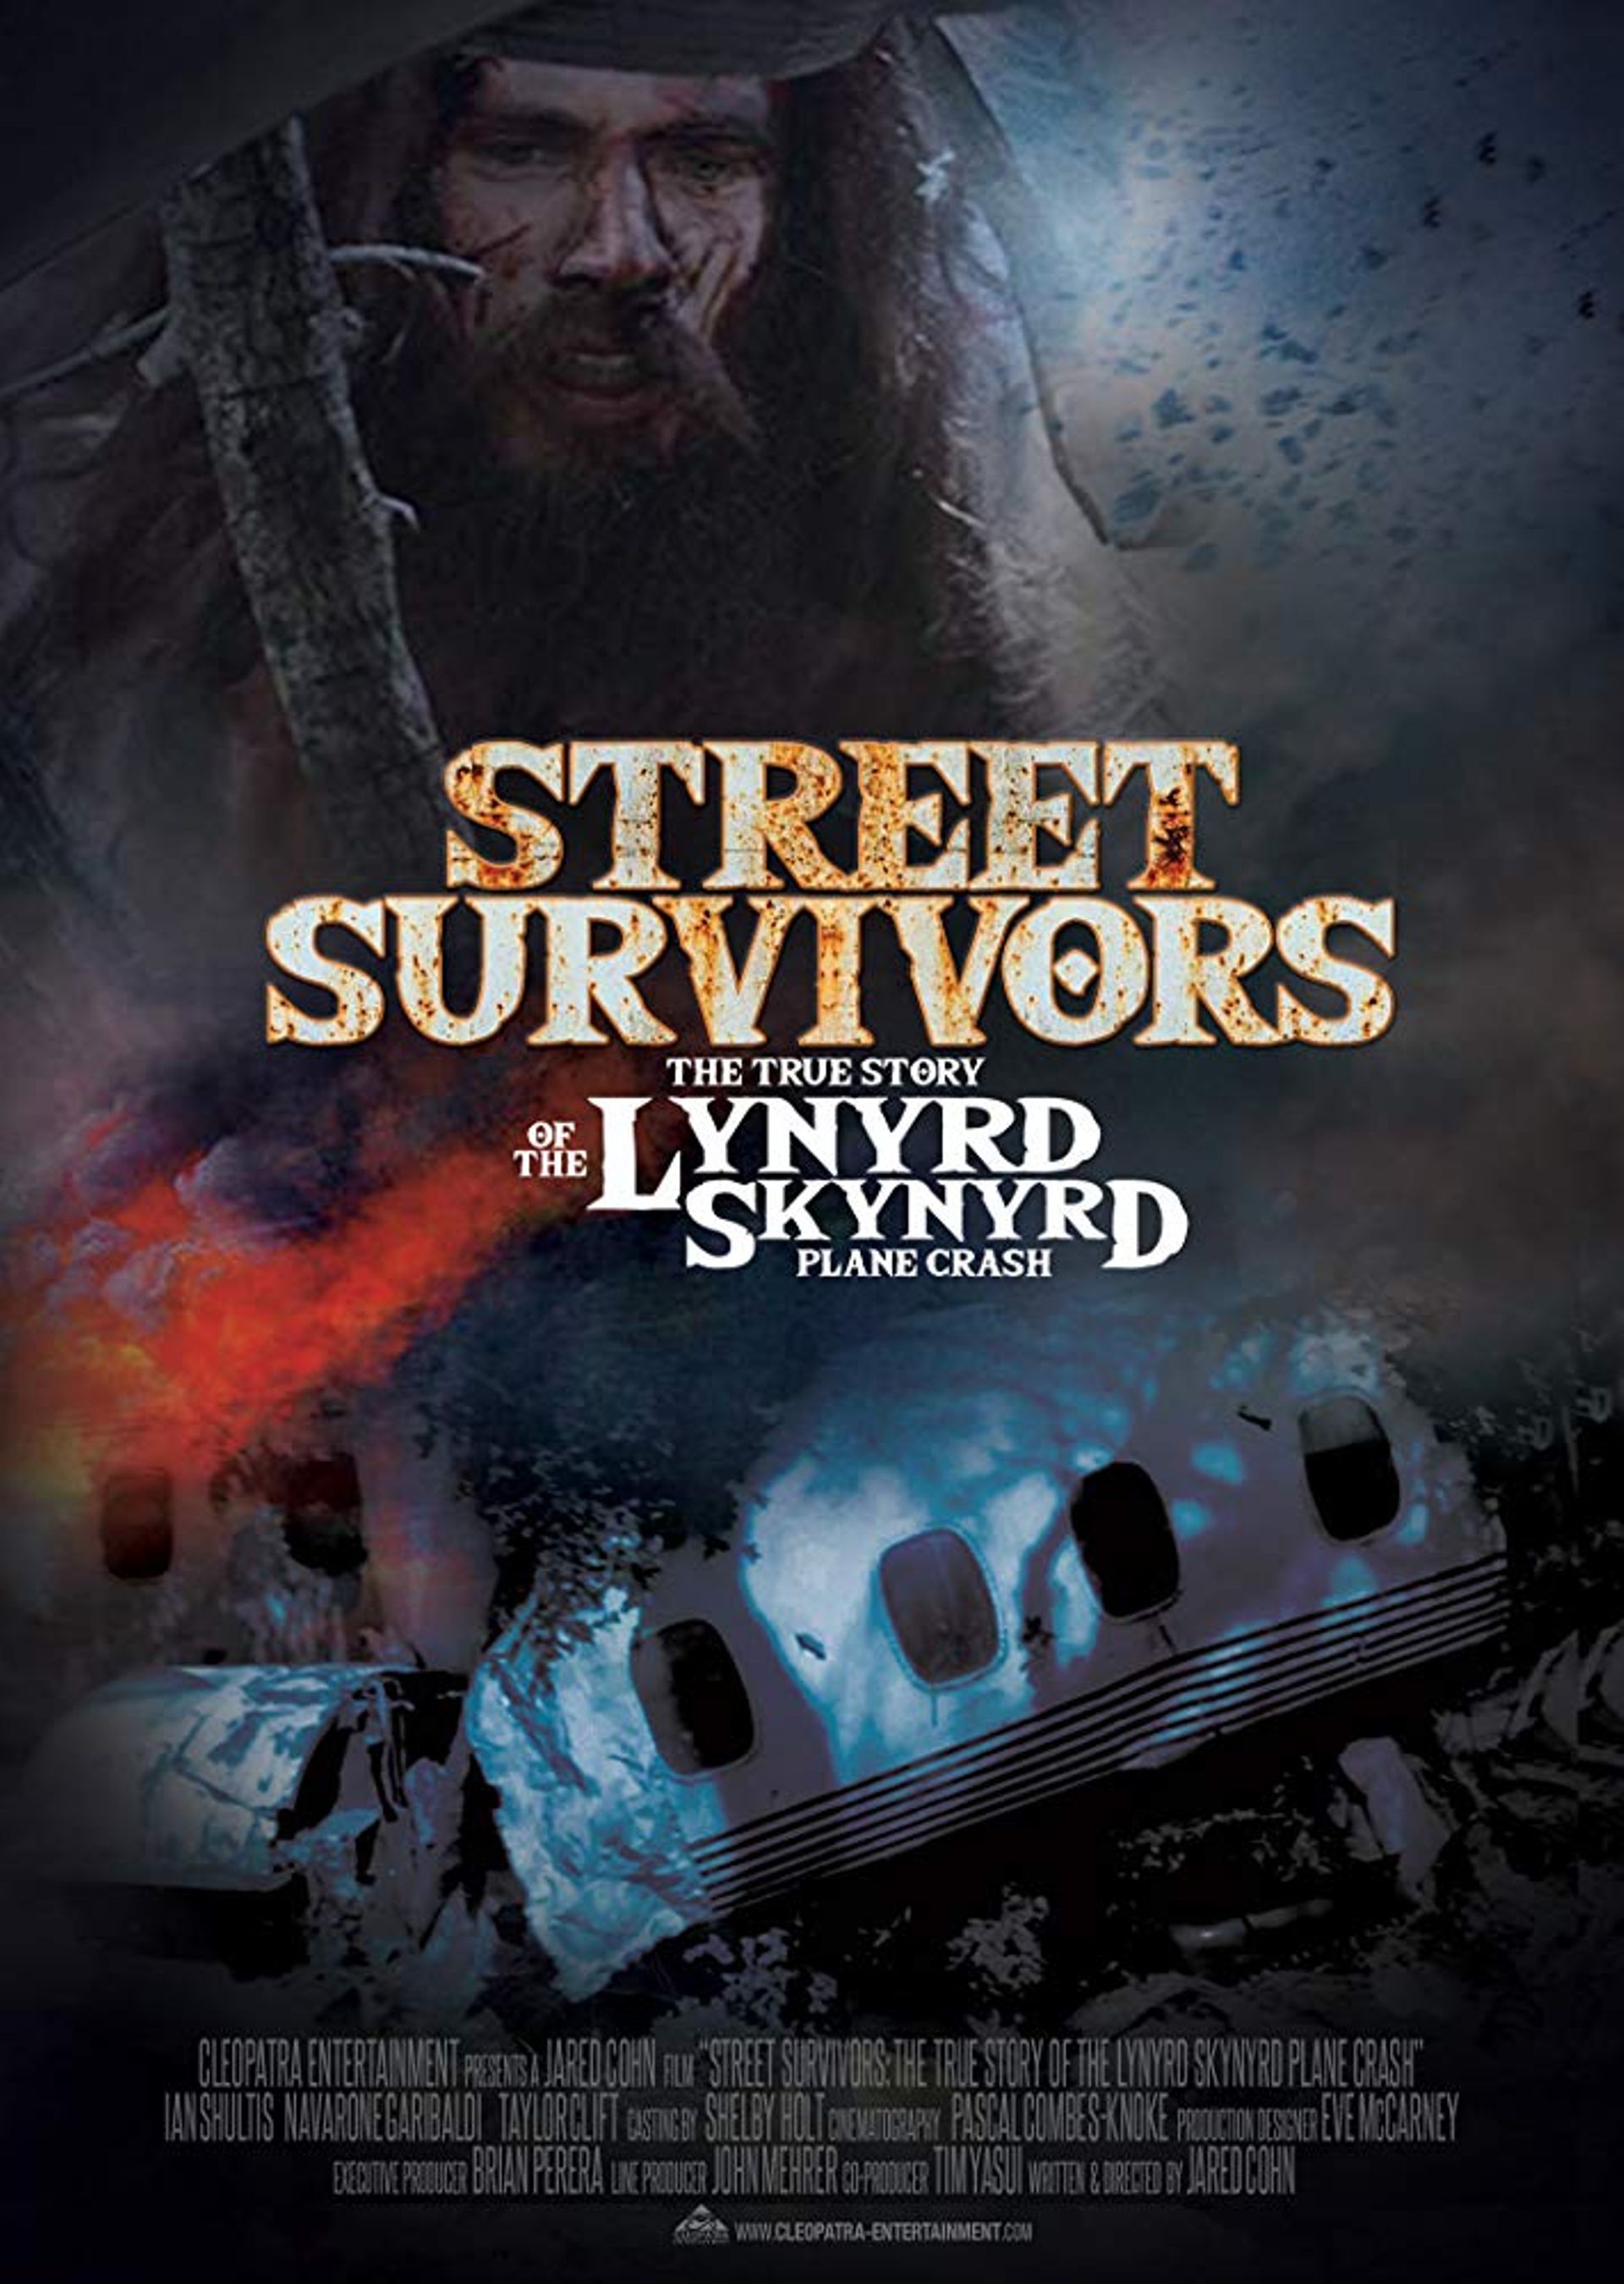 Le biopic Lynyrd Skynyrd sur écran en juin